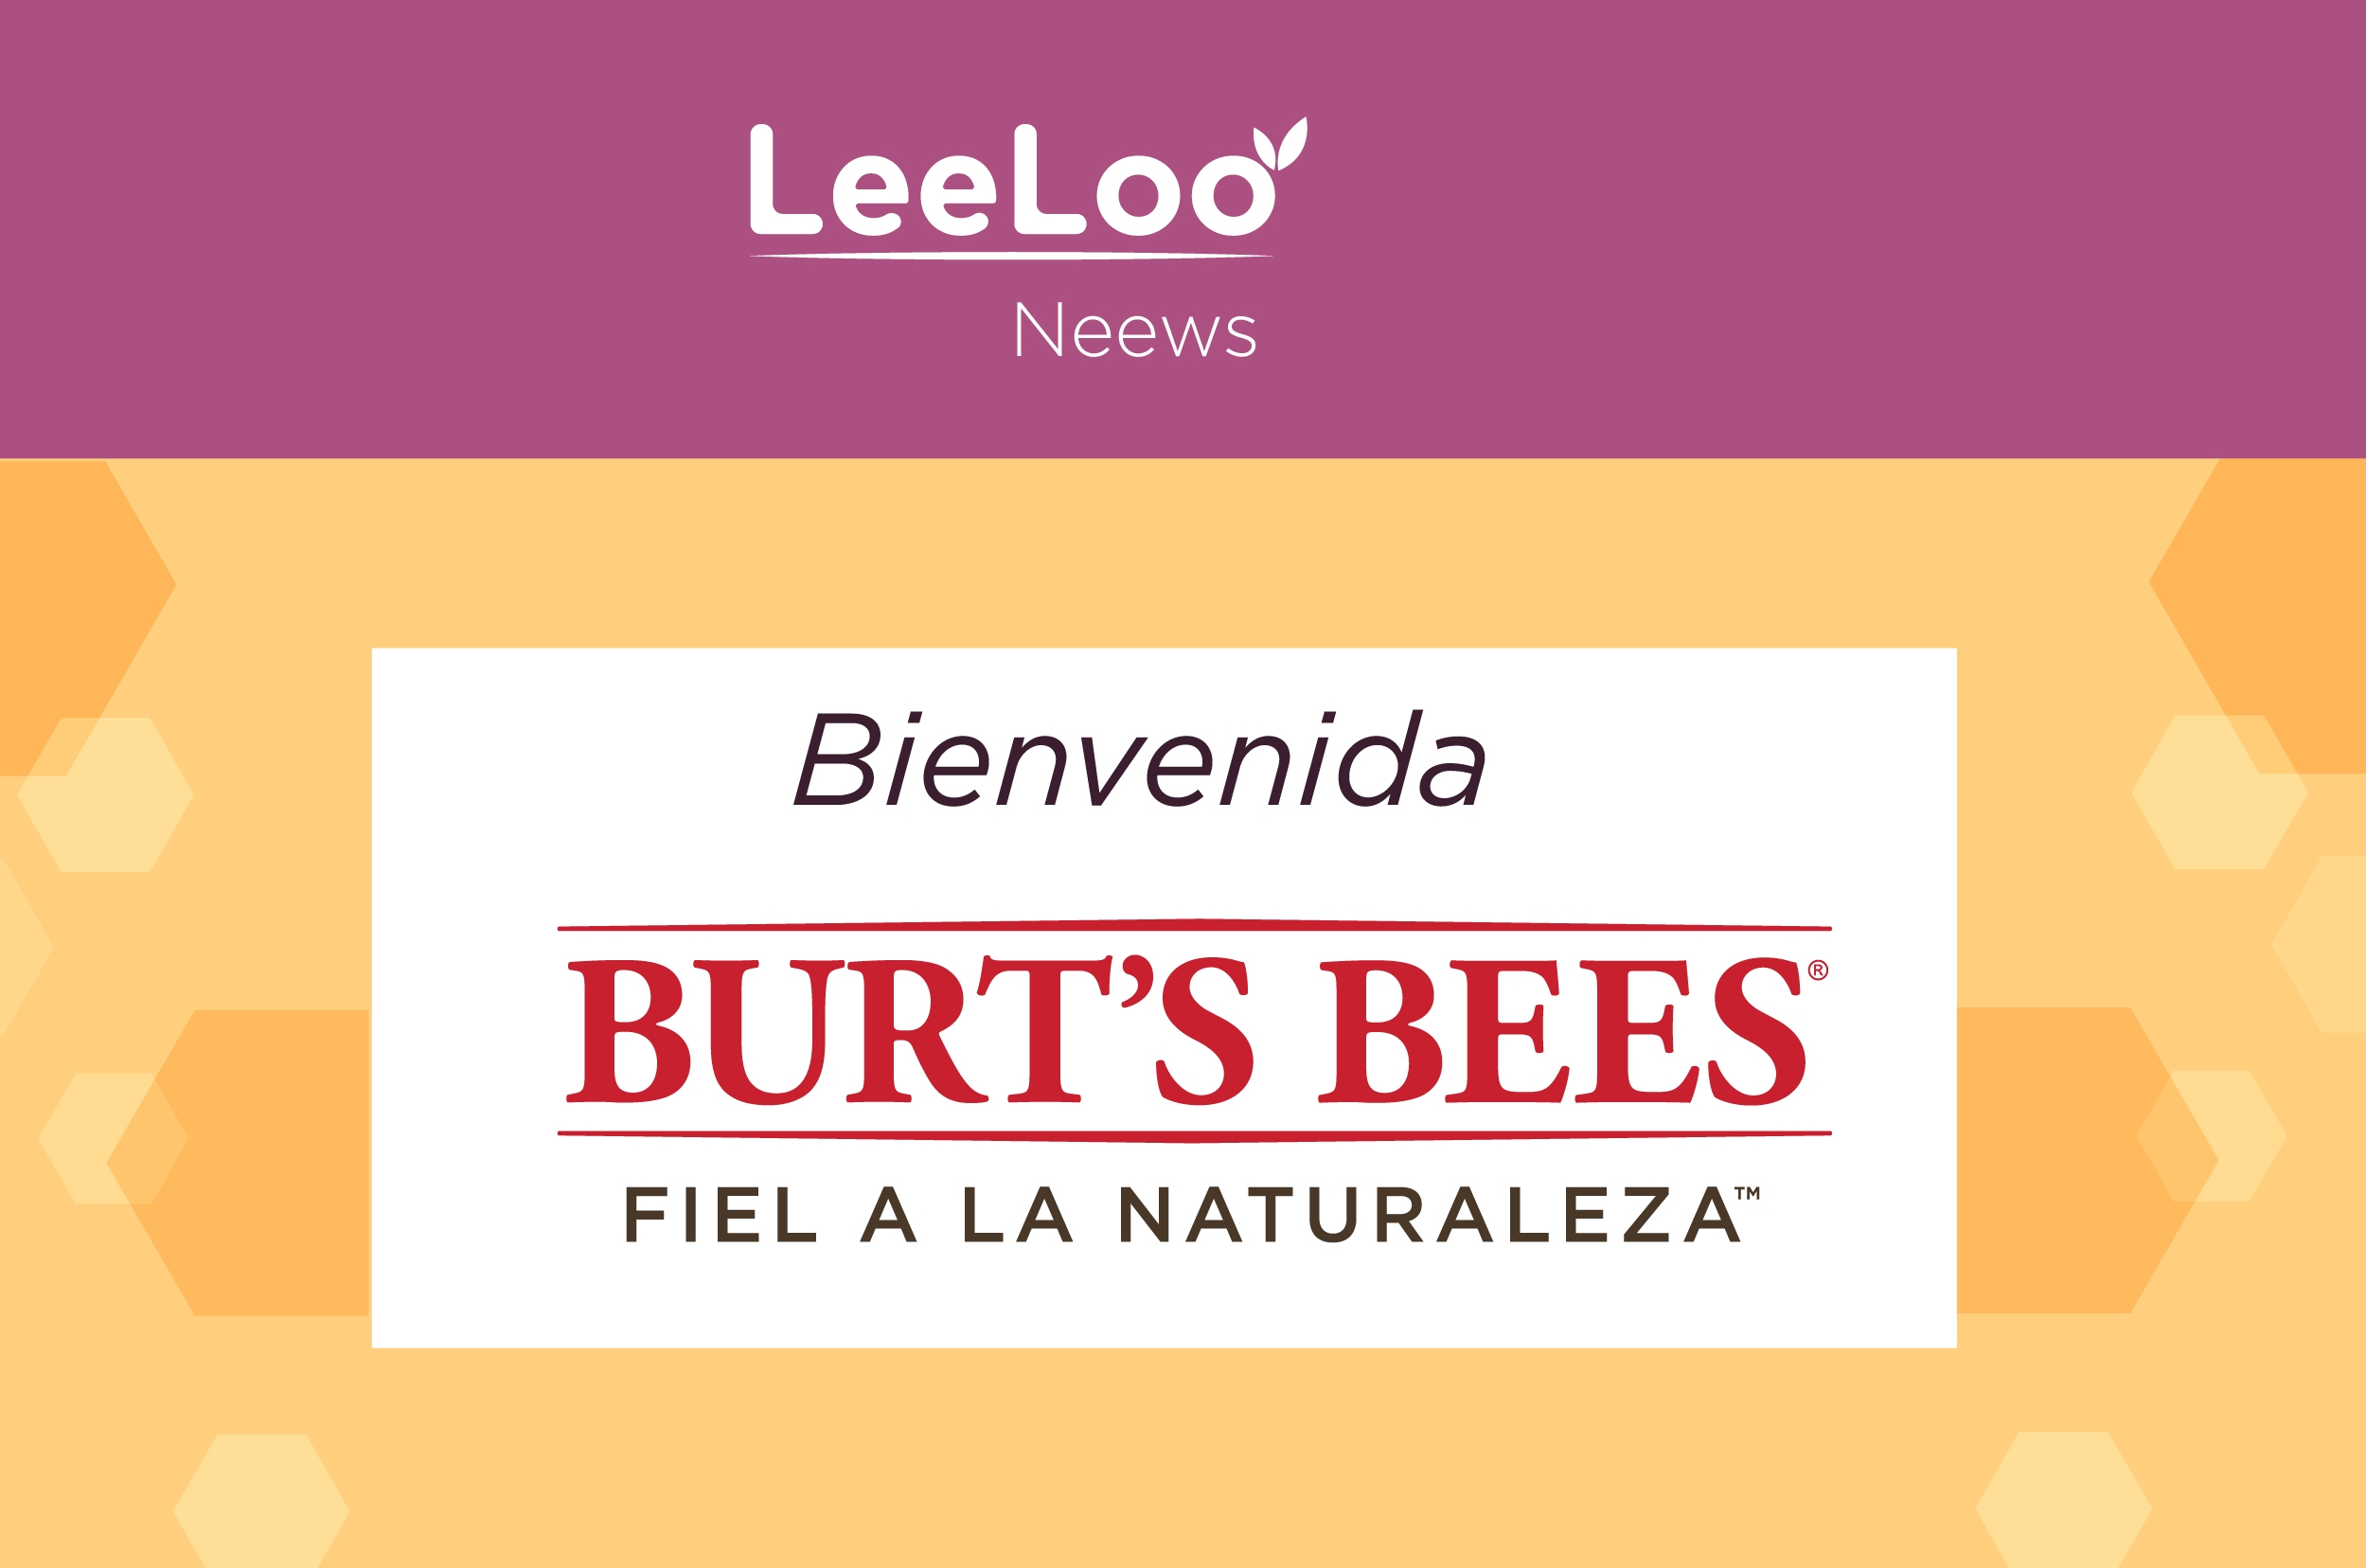 Bienvenida Burts Bees